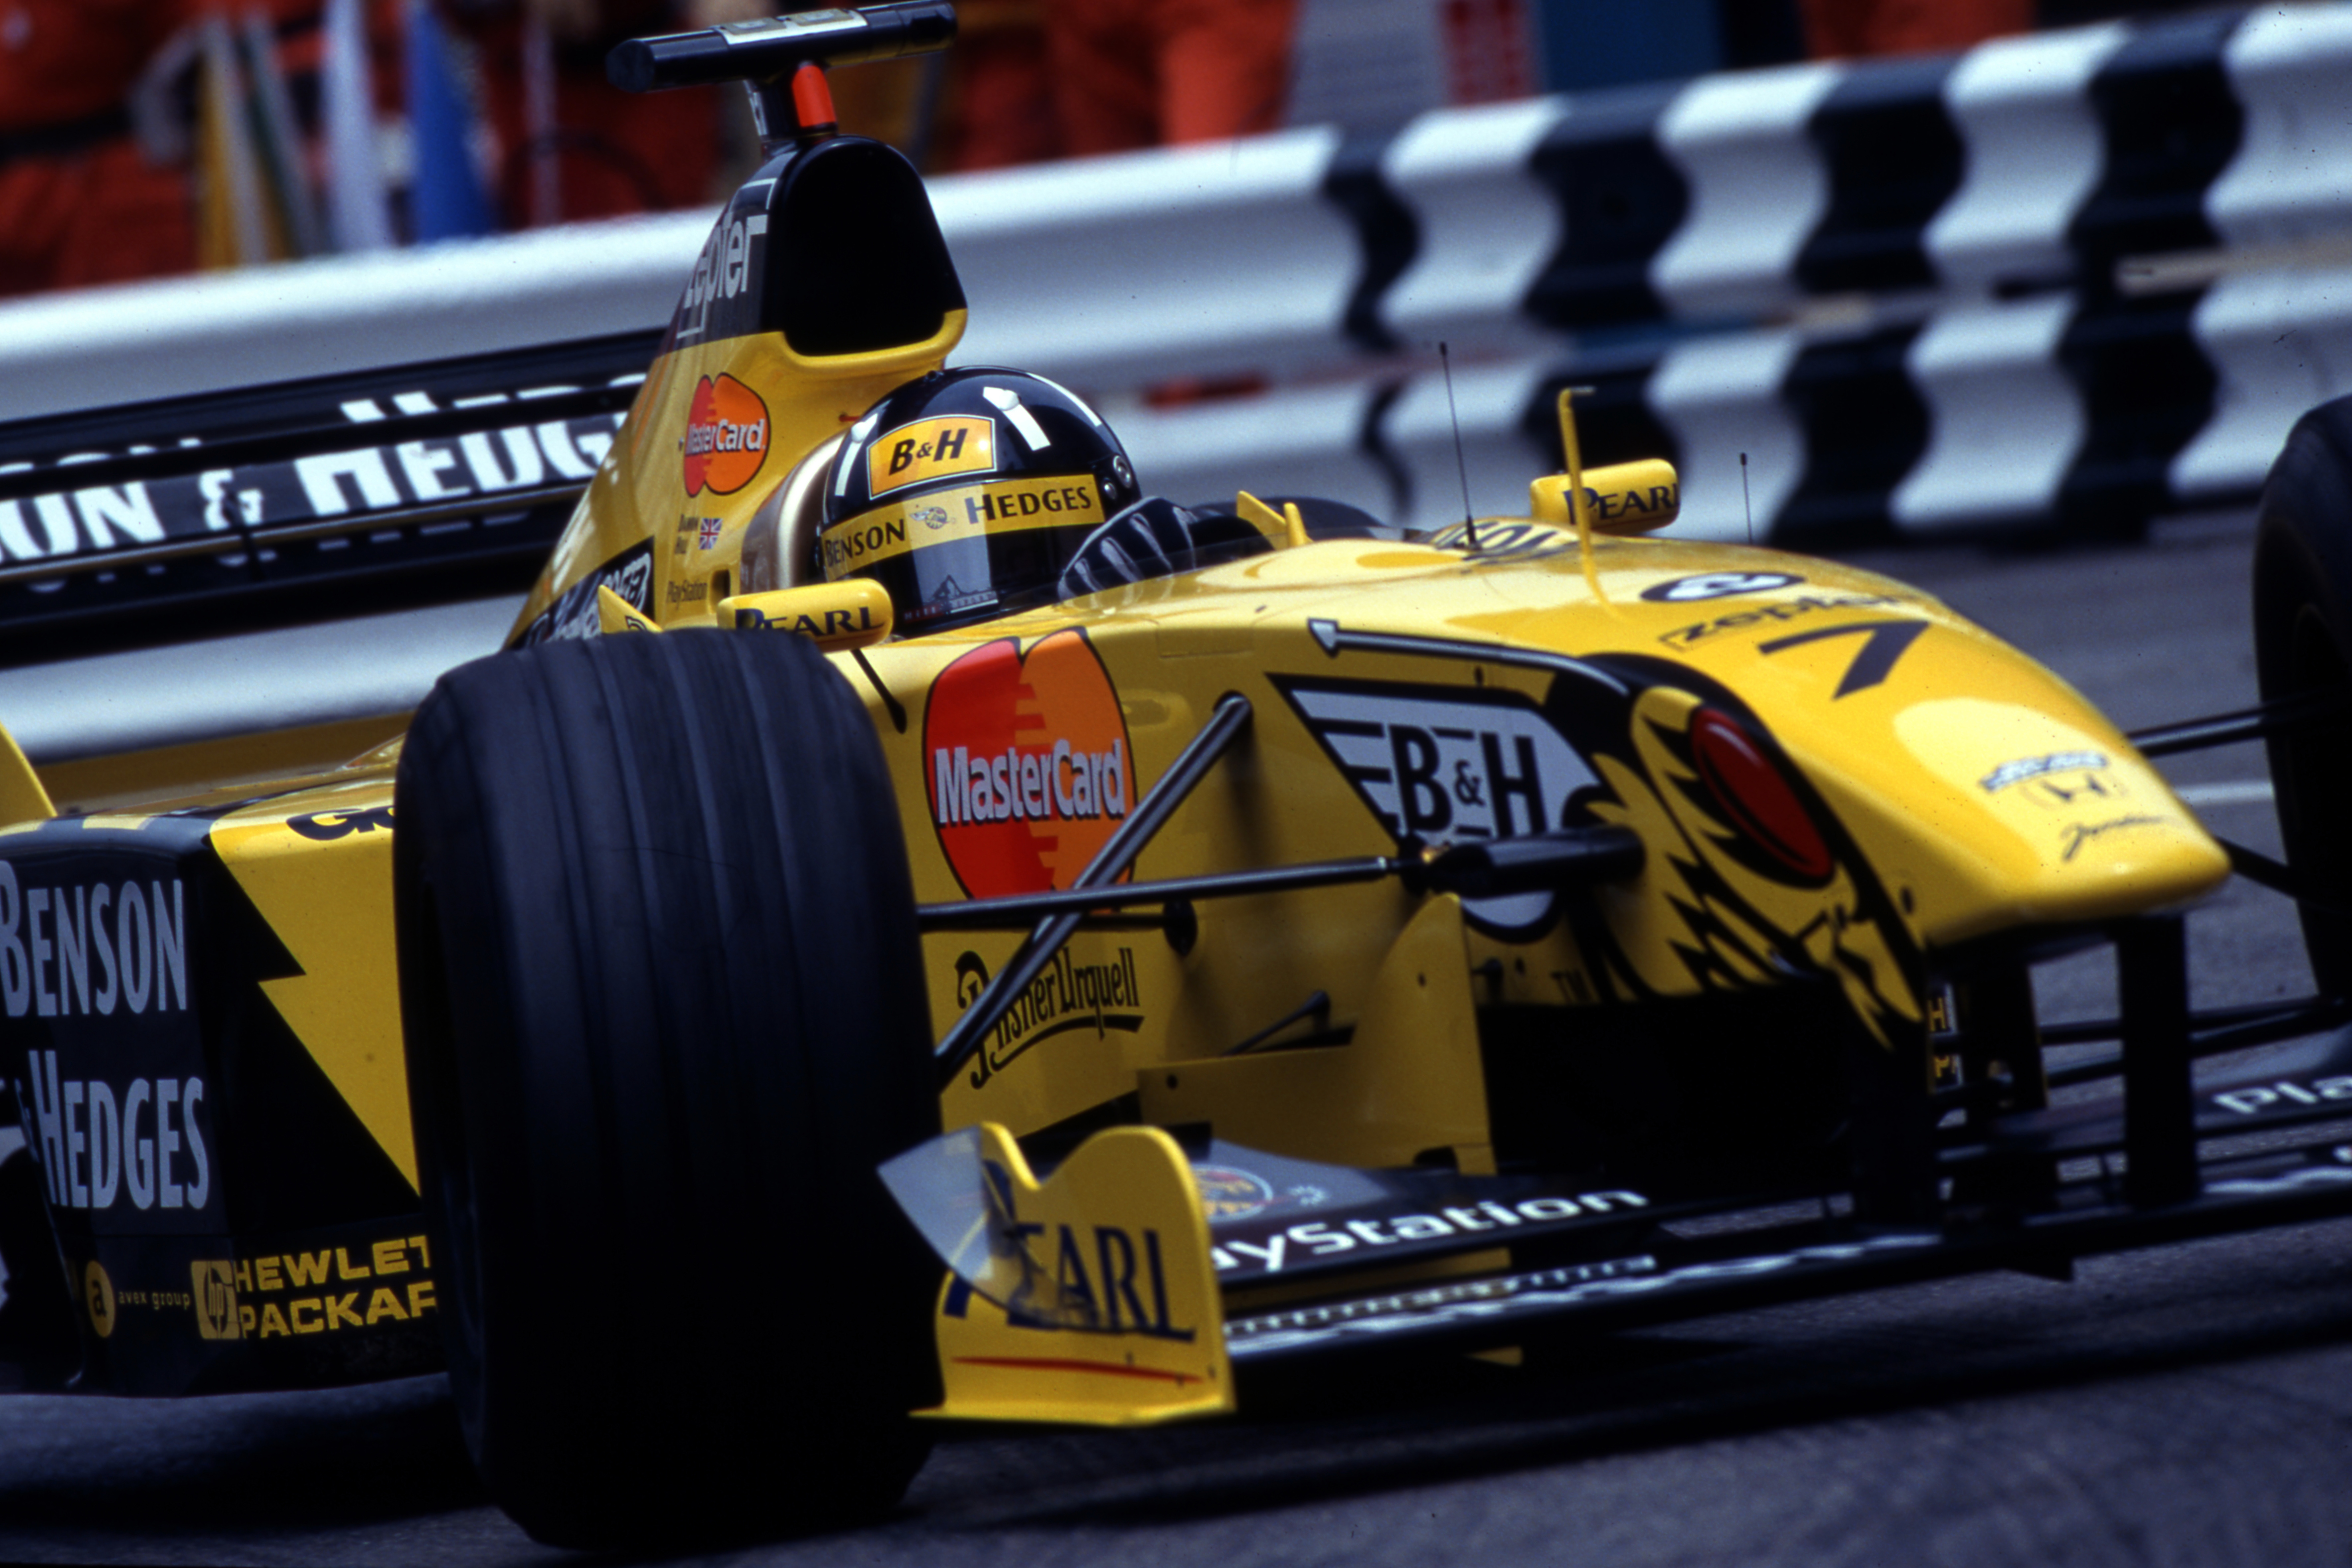 Monaco Grand Prix Monte Carlo (mc) 13 16 05 1999